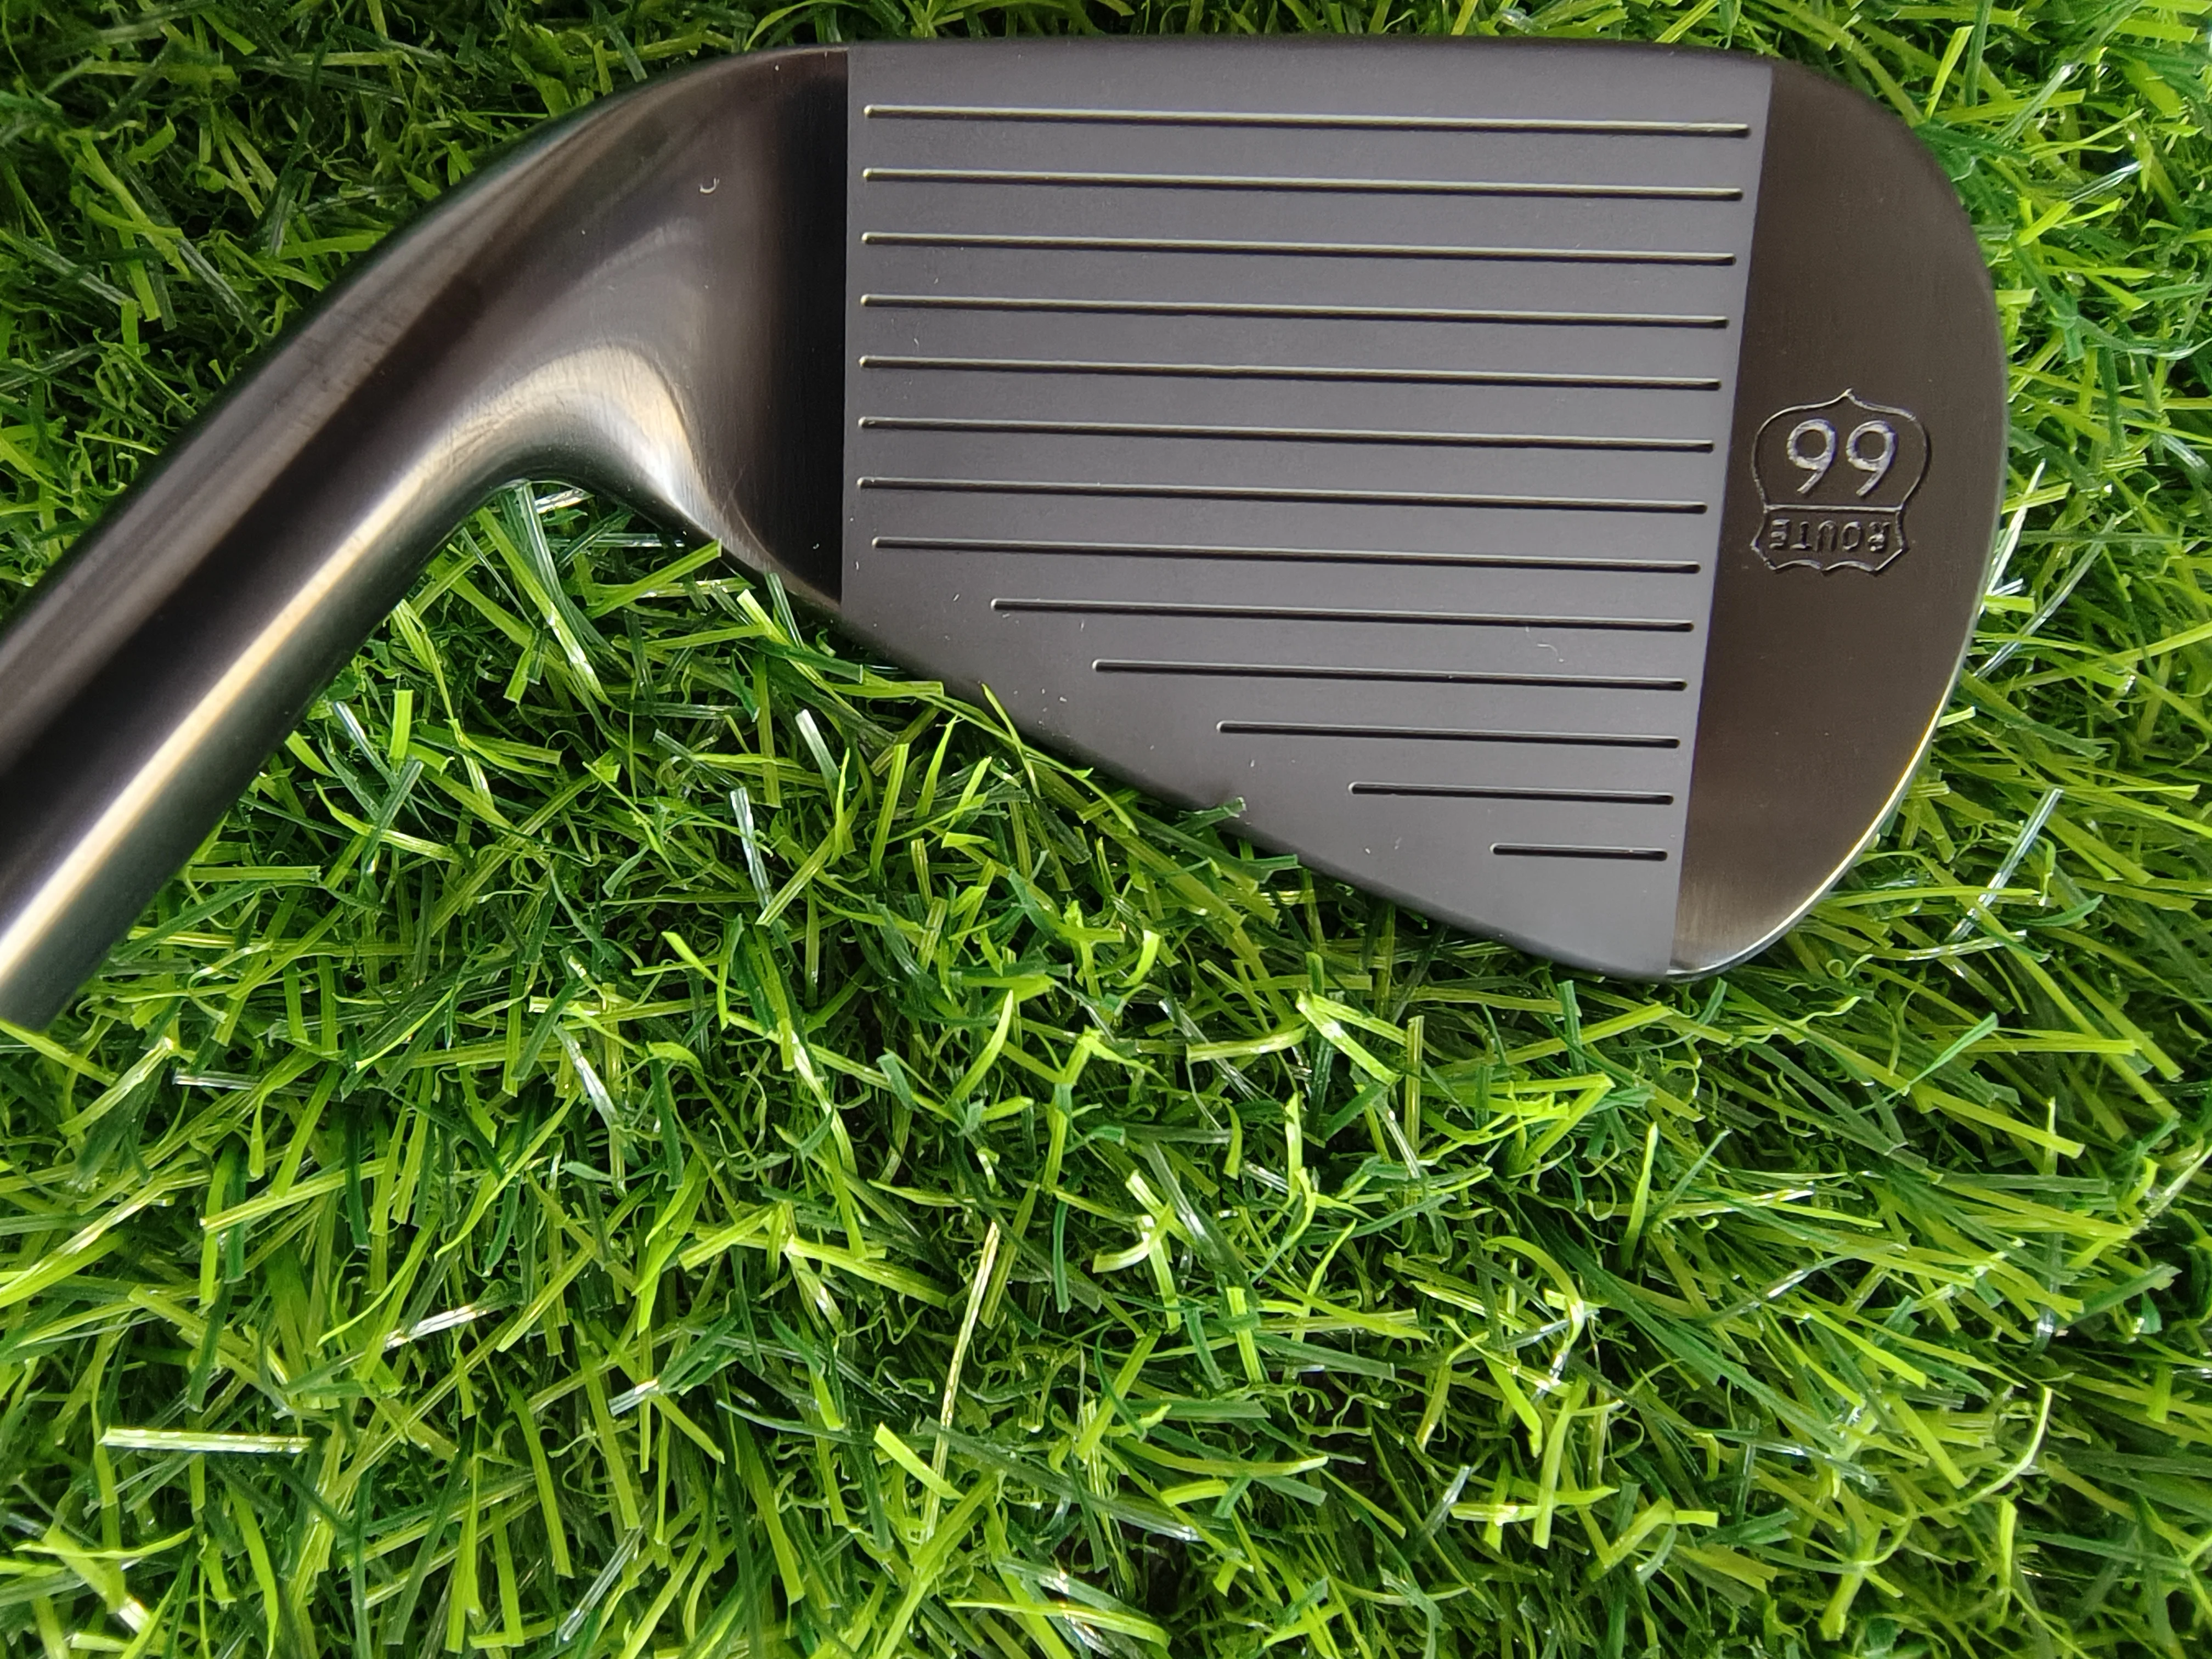 Новые утюги для гольфа, черный оригинальный продукт, утюги HD ROUTE 66, набор кованых утюгов для гольфа (4 5 6 7 8 9 P)